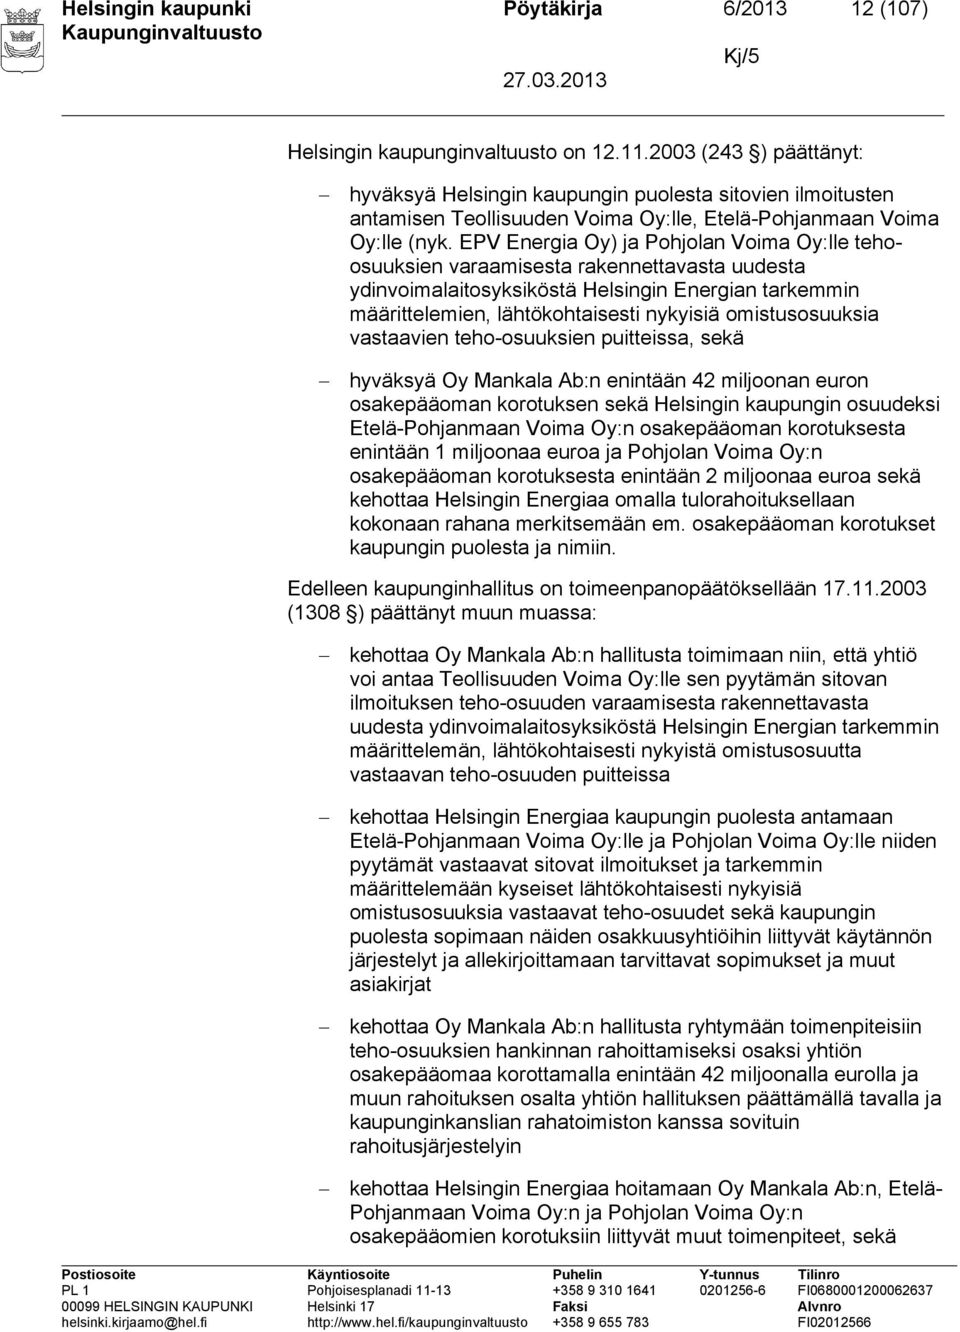 EPV Energia Oy) ja Pohjolan Voima Oy:lle tehoosuuksien varaamisesta rakennettavasta uudesta ydinvoimalaitosyksiköstä Helsingin Energian tarkemmin määrittelemien, lähtökohtaisesti nykyisiä